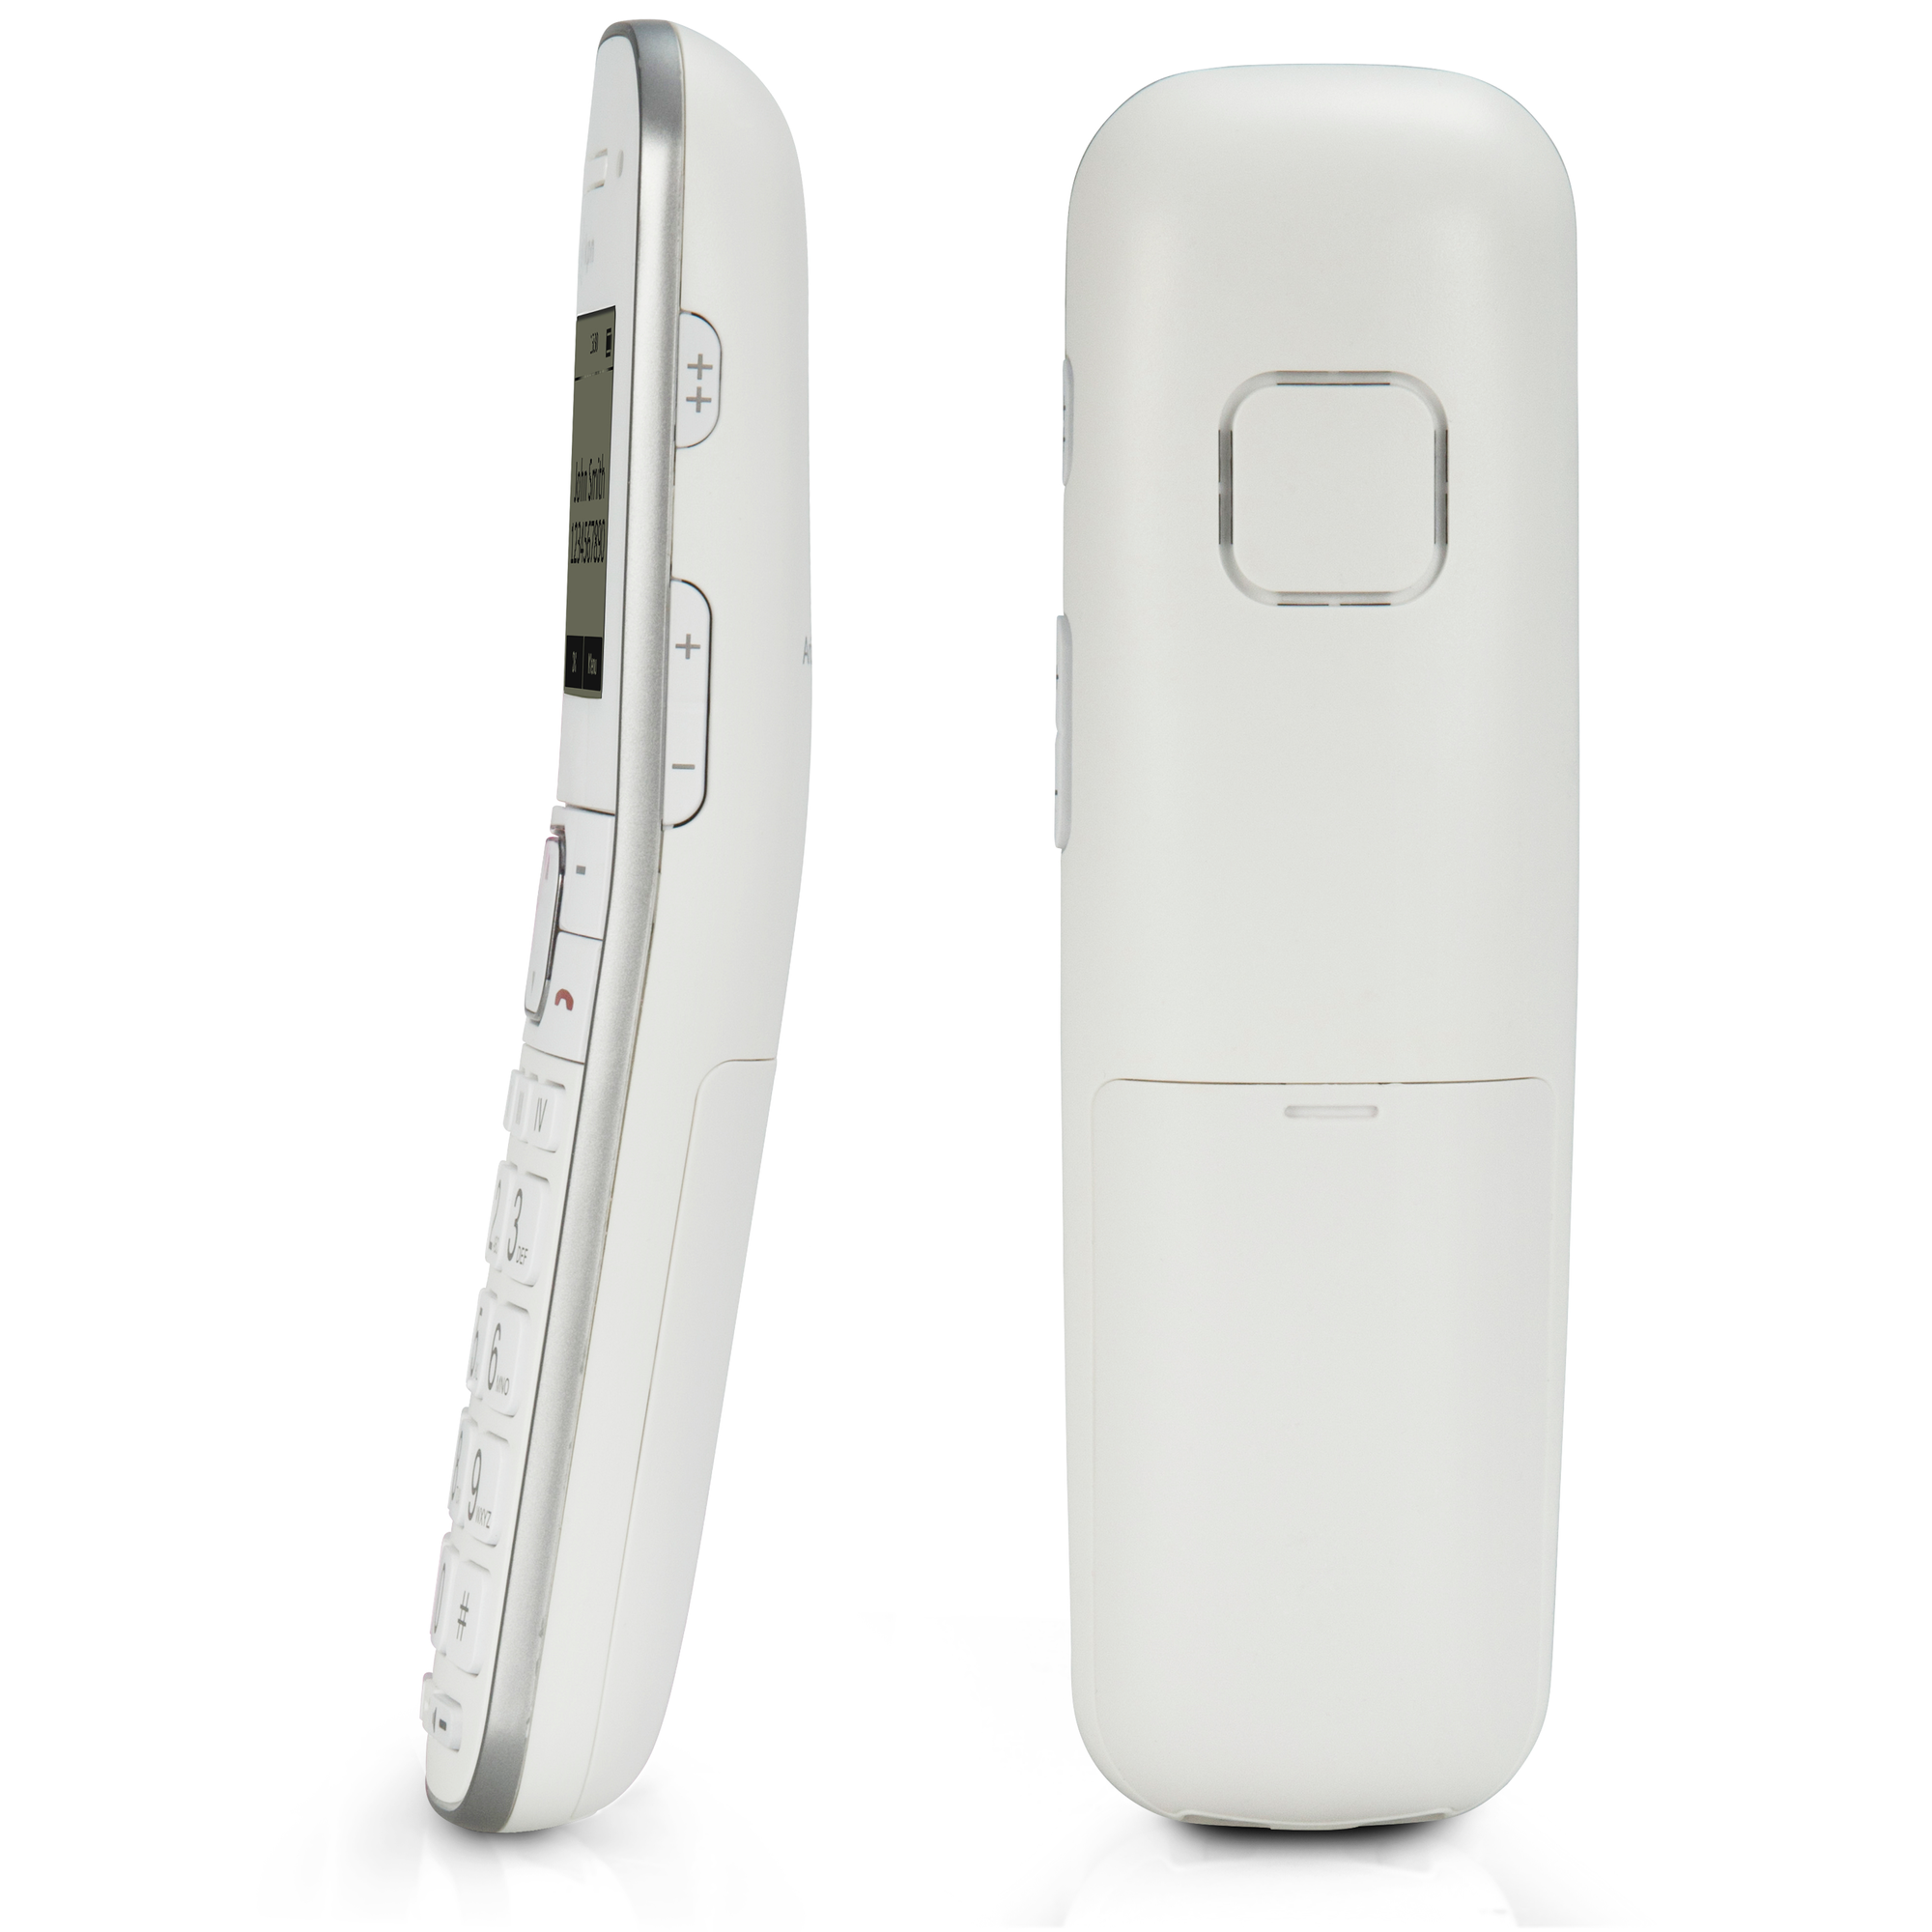 Tasten,2 Mobilteile FX-9000 - großen Seniorentelefon schnurloses mit FYSIC DUO